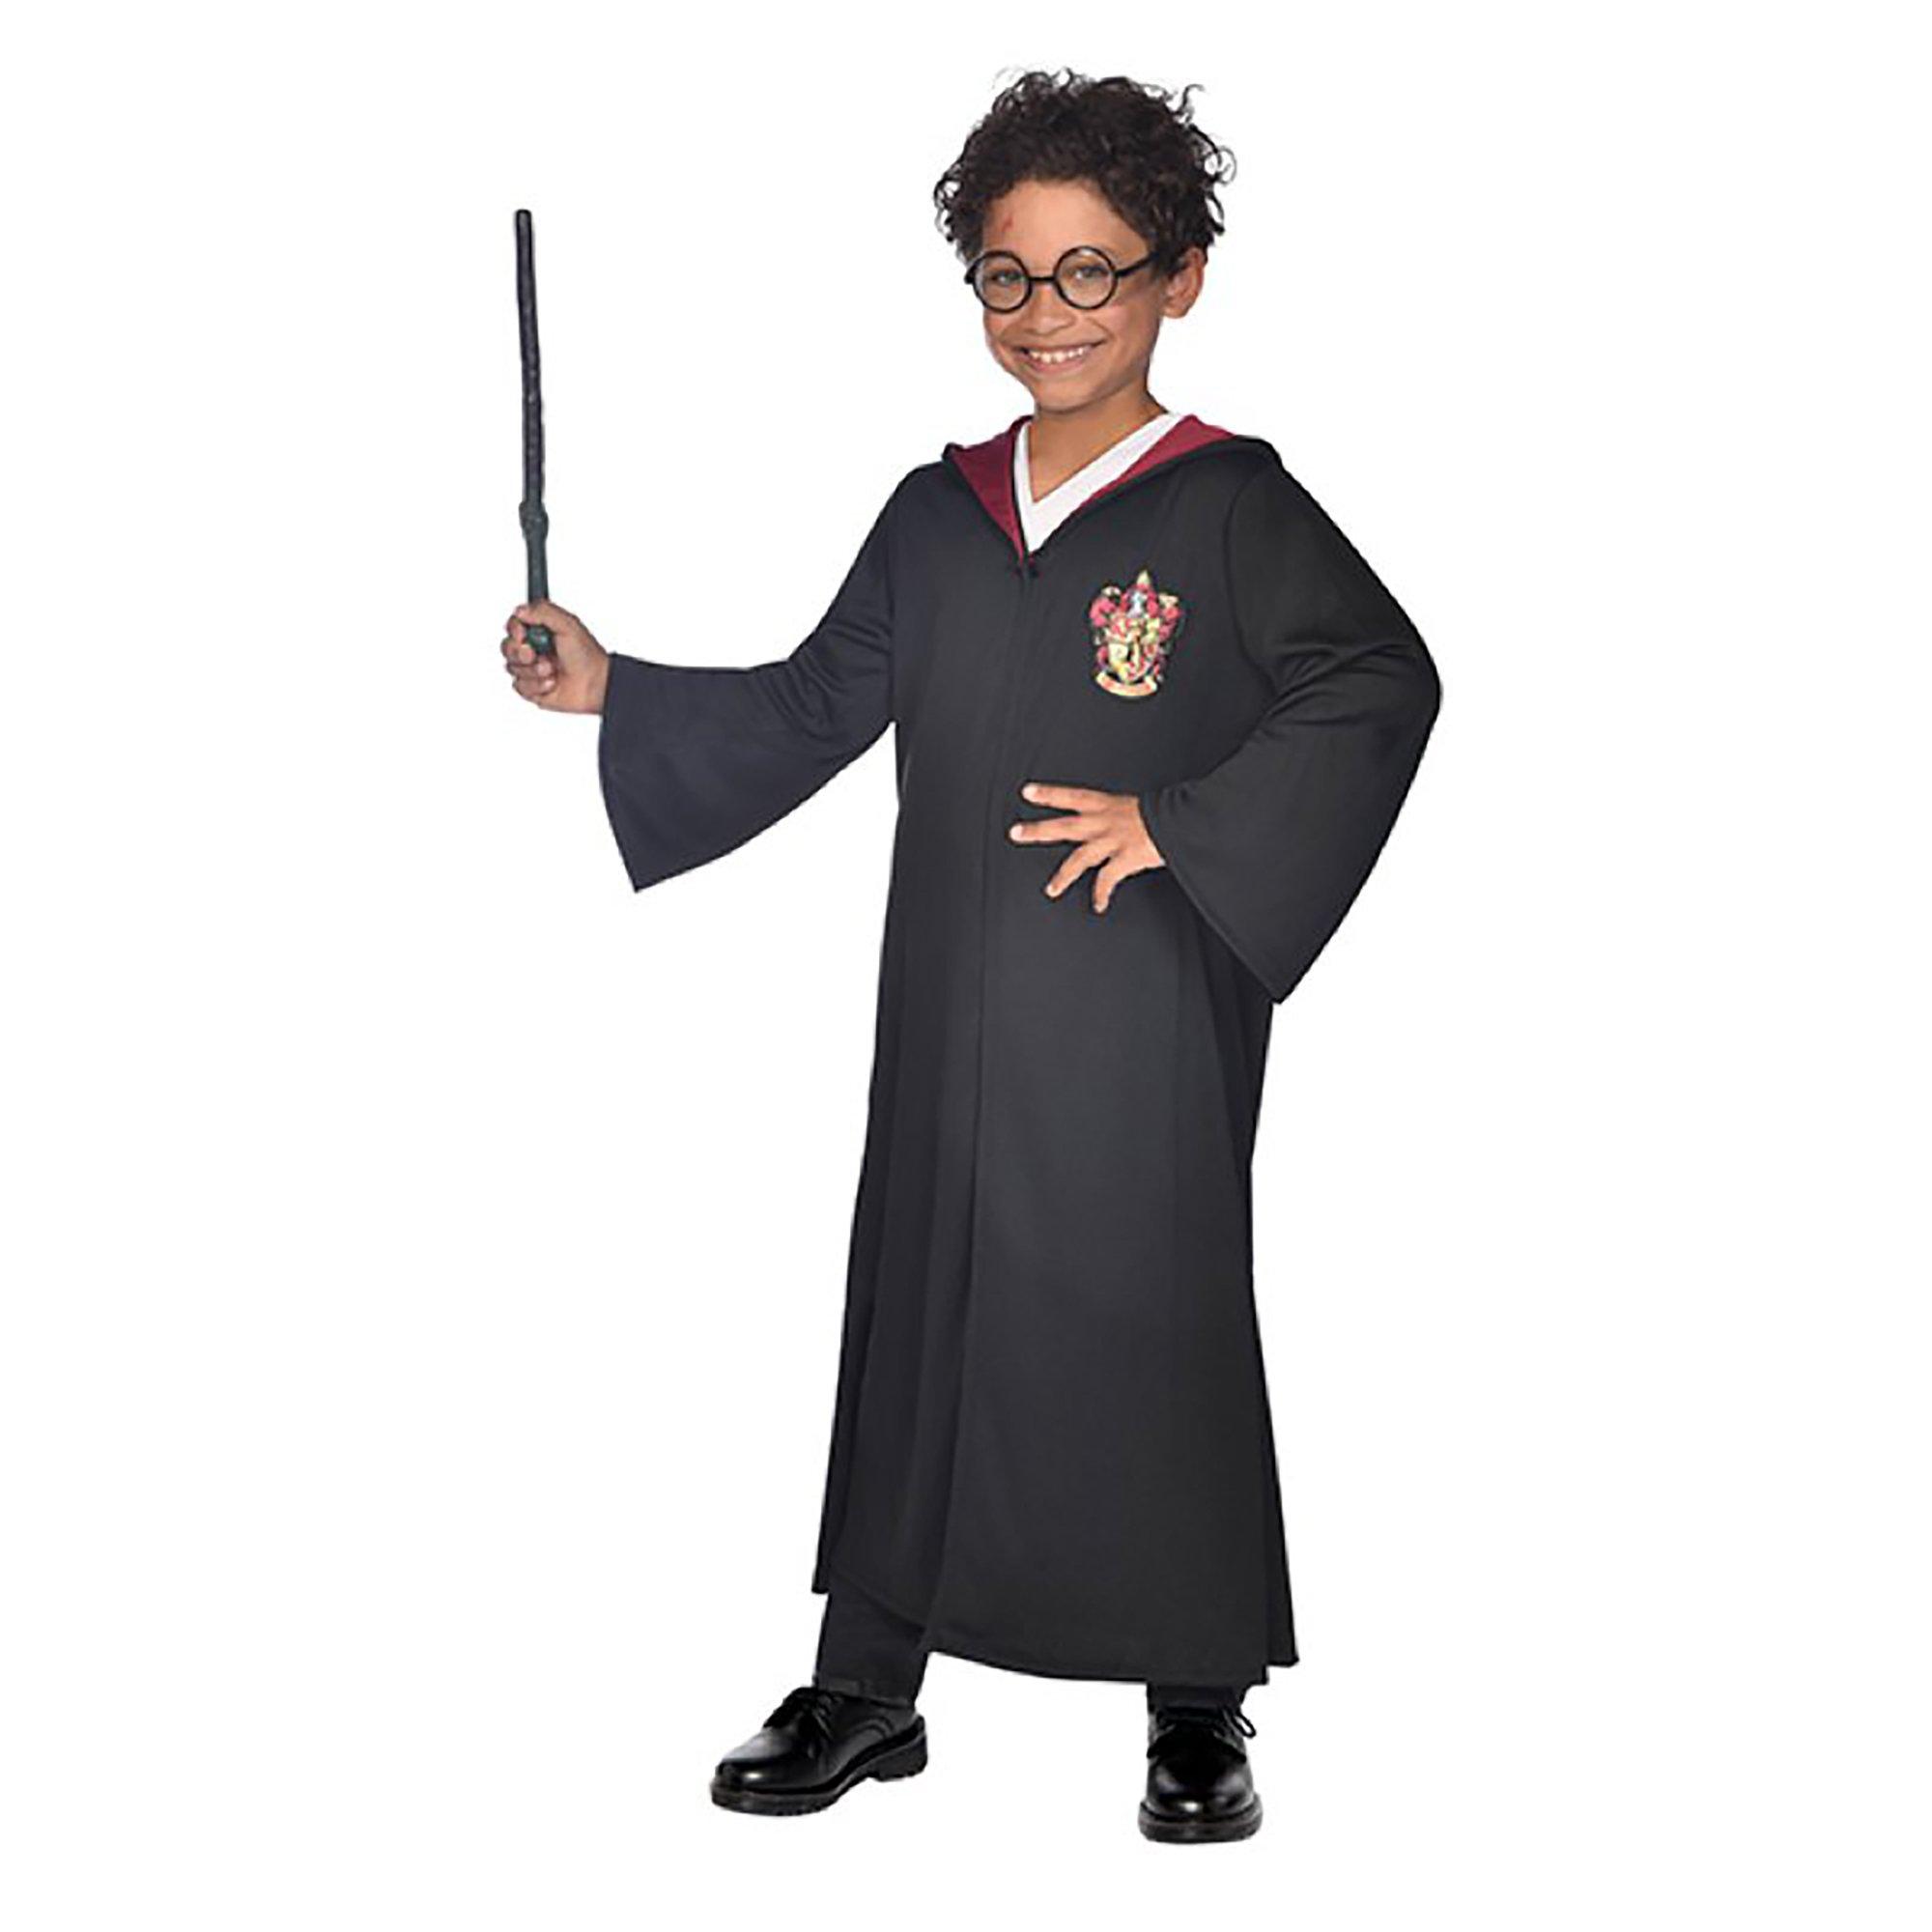 Image of amscan Harry Potter Kostüm mit Brille und Zauberstab - L